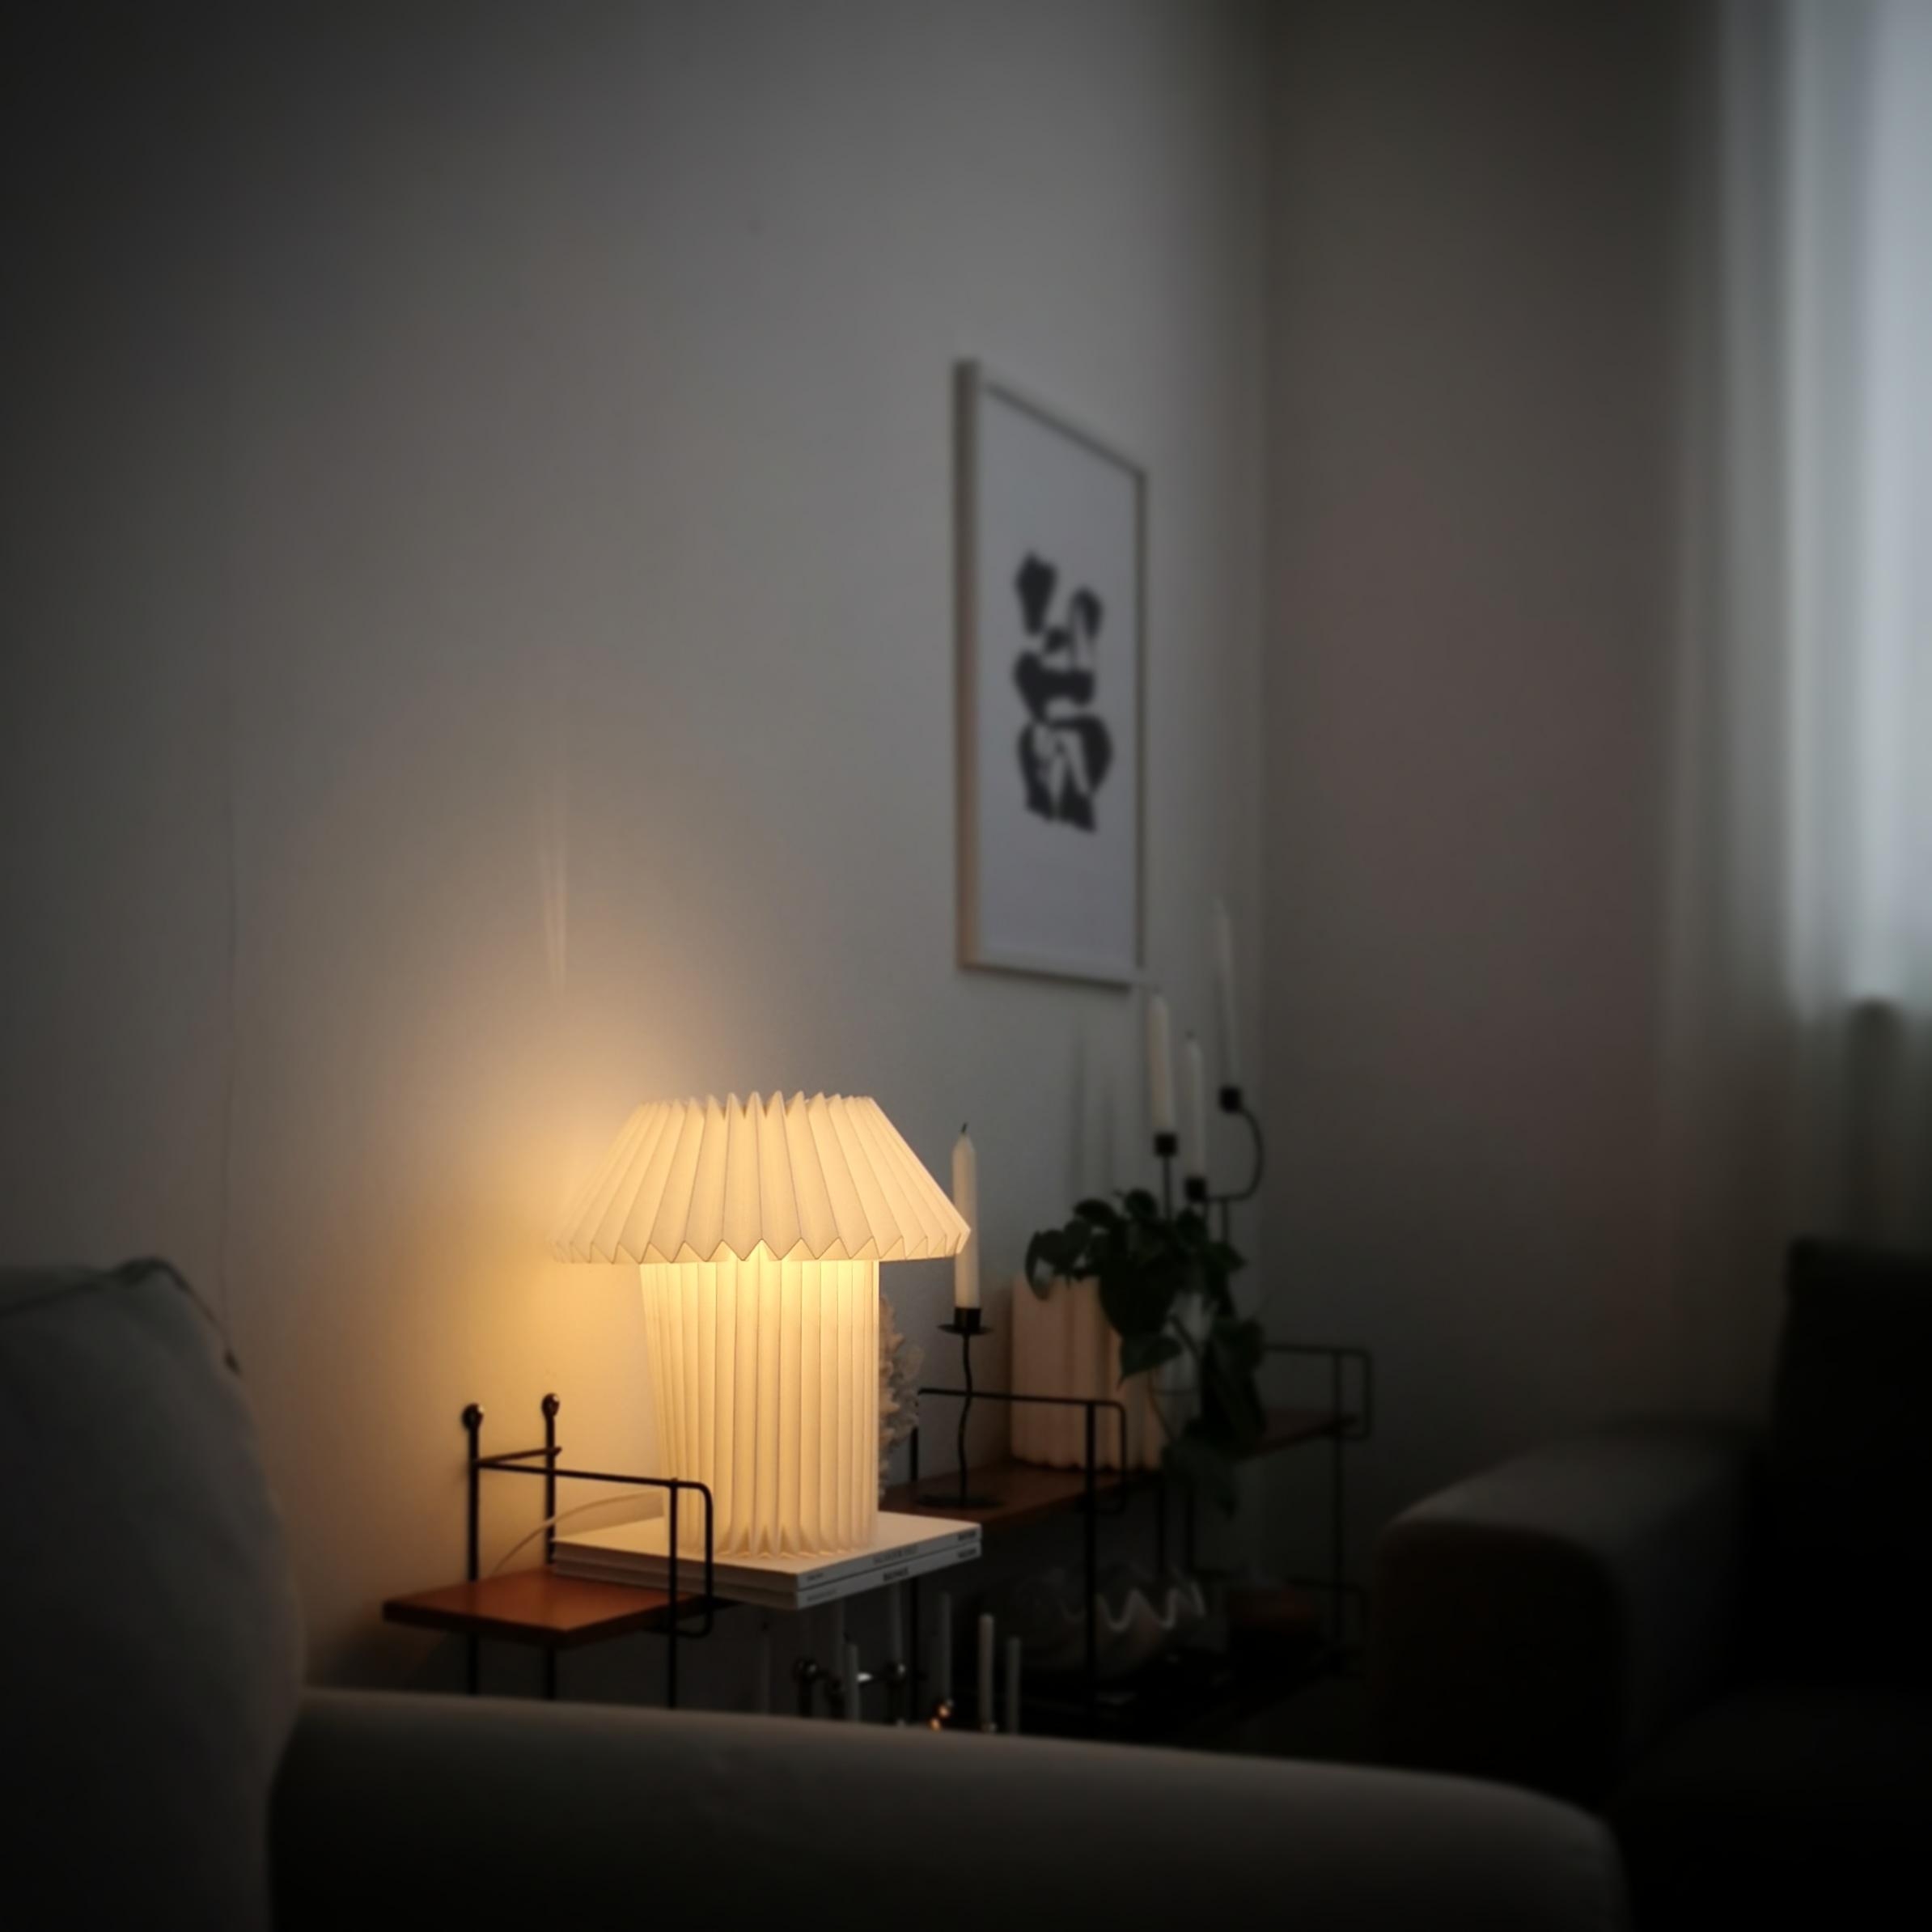 #wohnzimmer #shelfie #shelf #couchstyle #vintage #leuchte #livingroom 